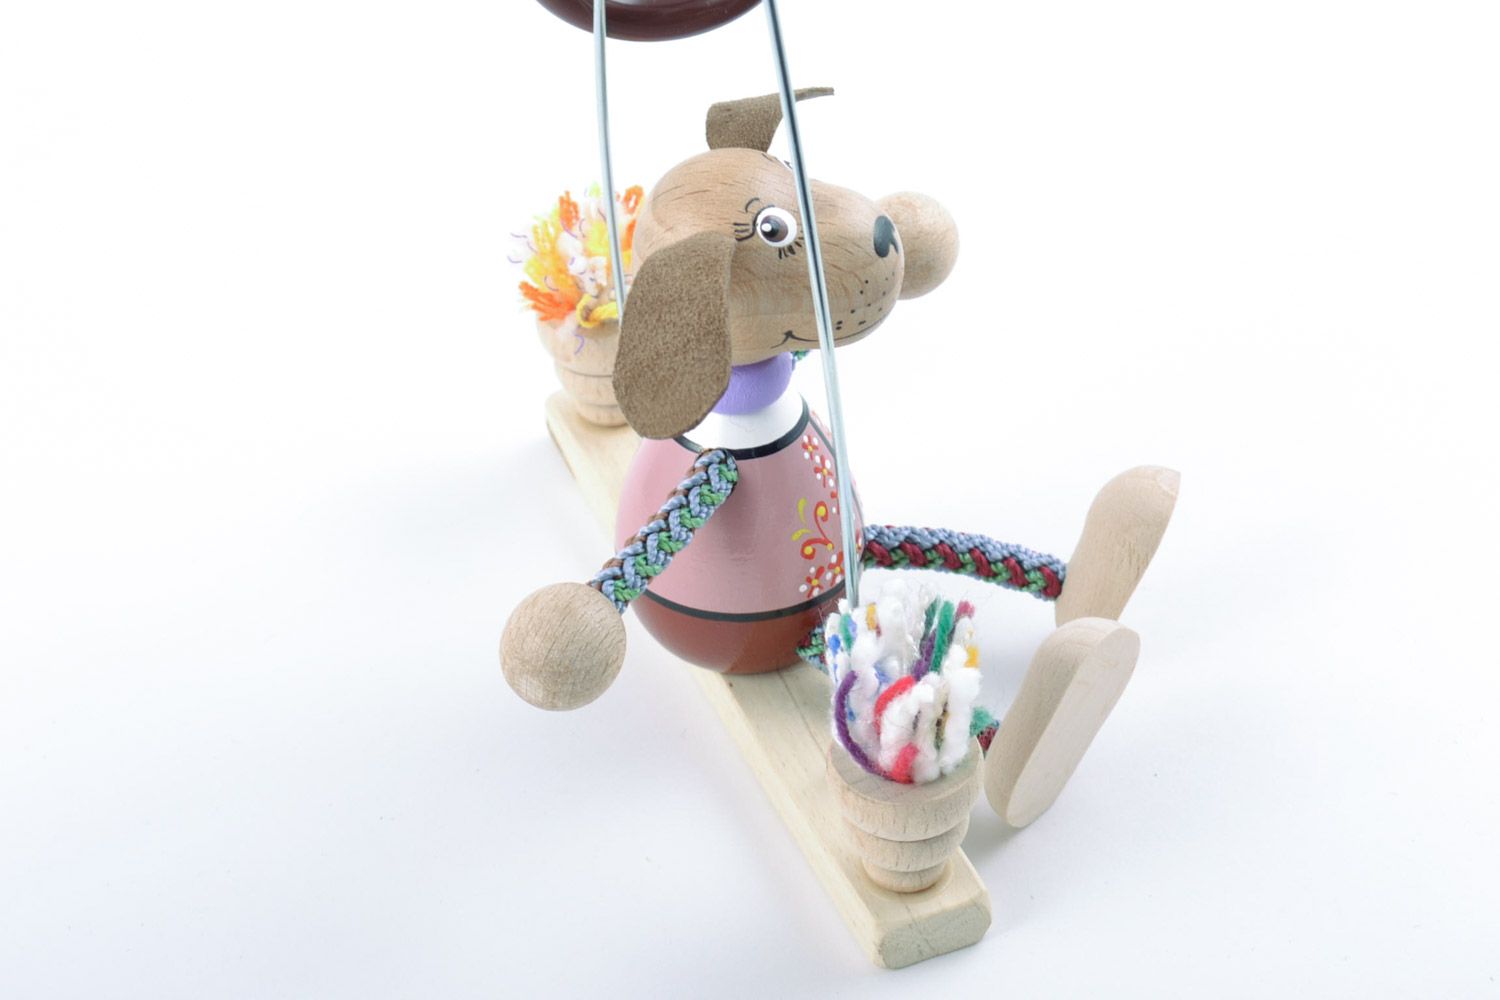 Designer Kinder Holz Spielzeug Hund aus der Bank mit Öko Farben bemalt einzigartig foto 5